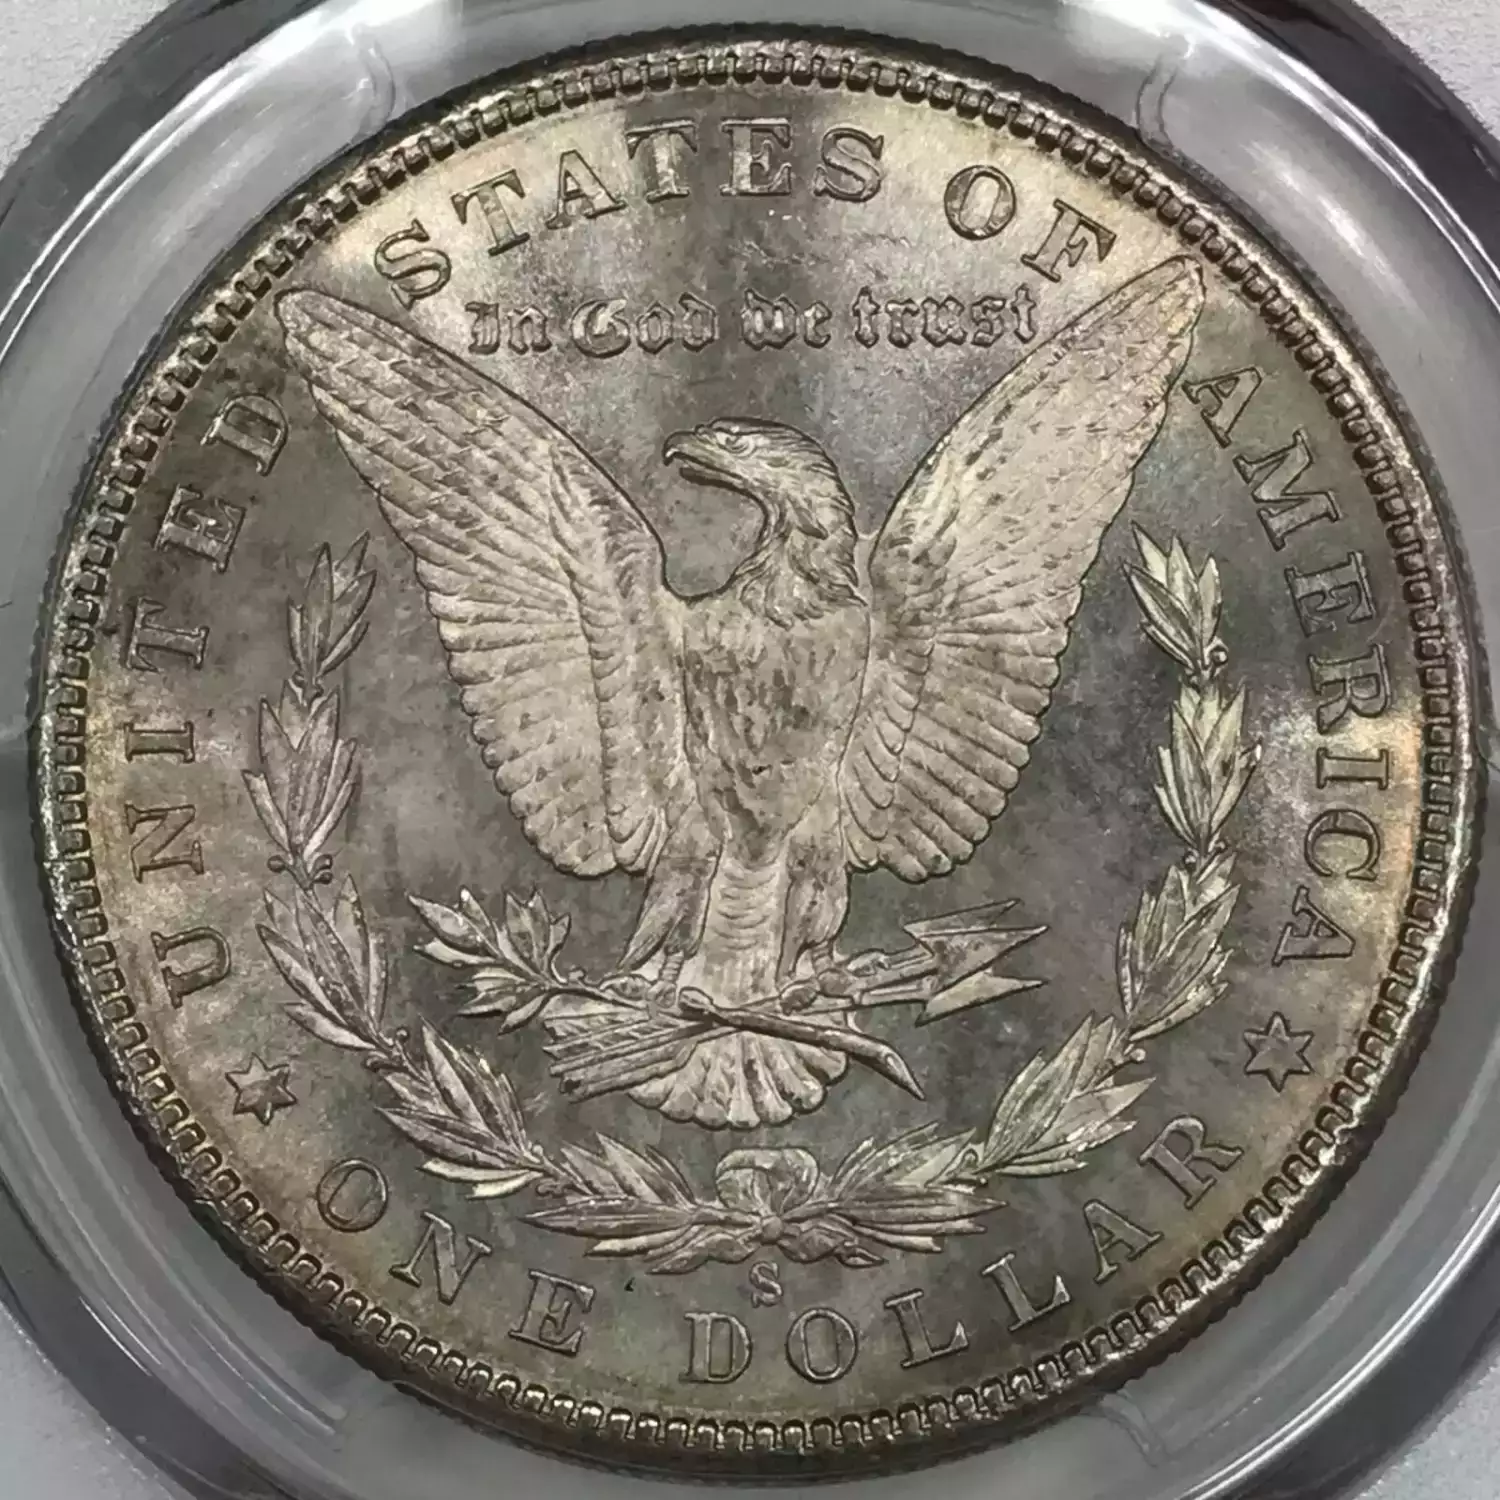 1880-S $1 (2)